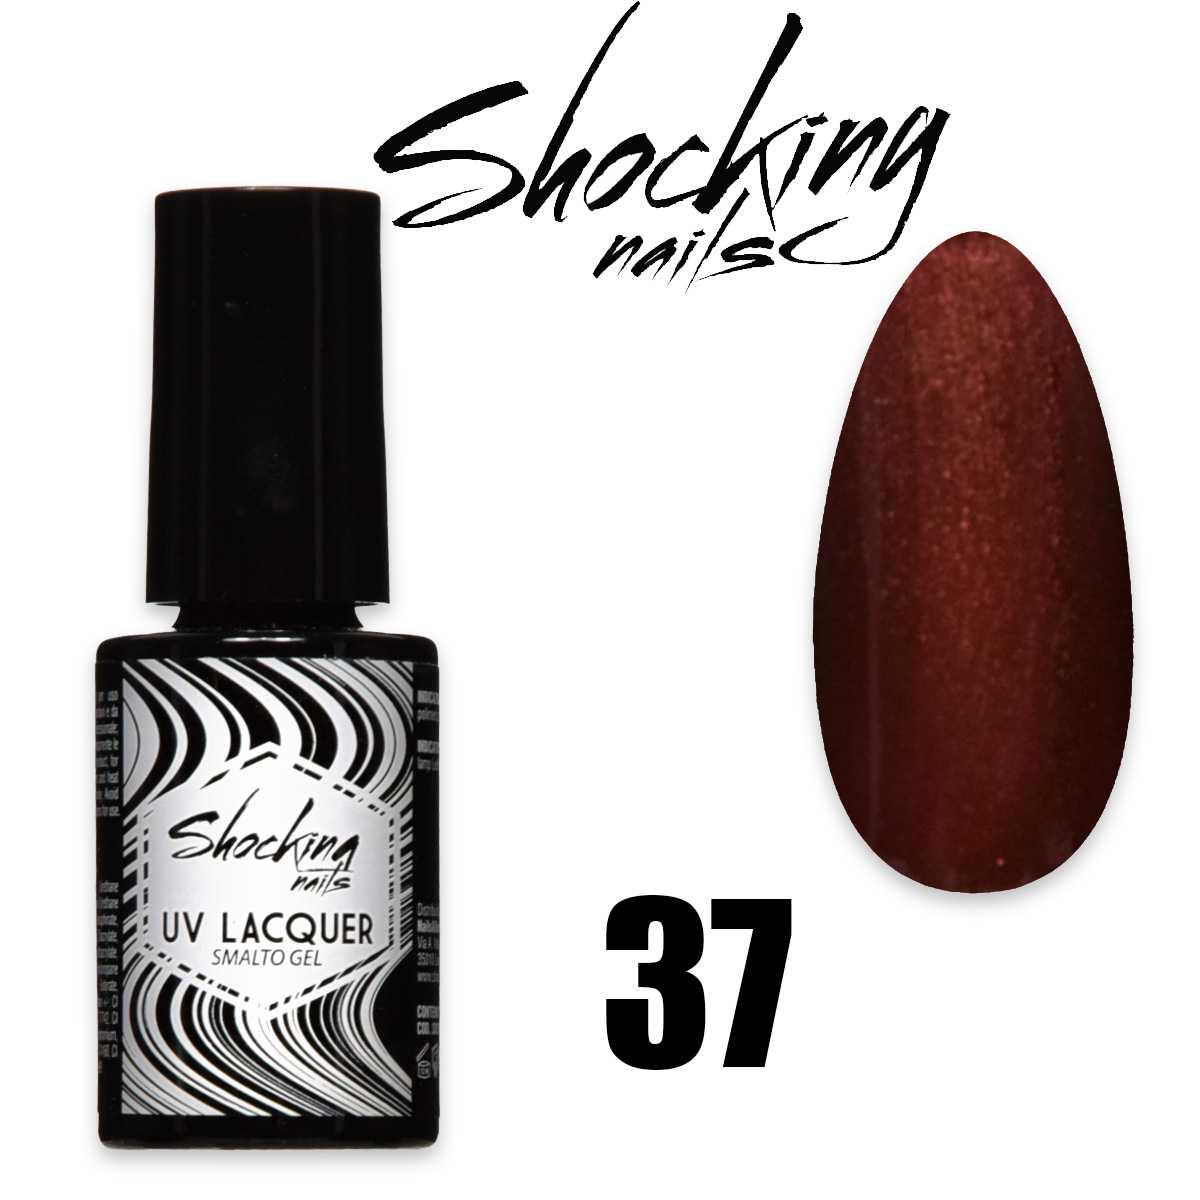 Shocking nails uv lacquer 37 smalto semipermanente gel